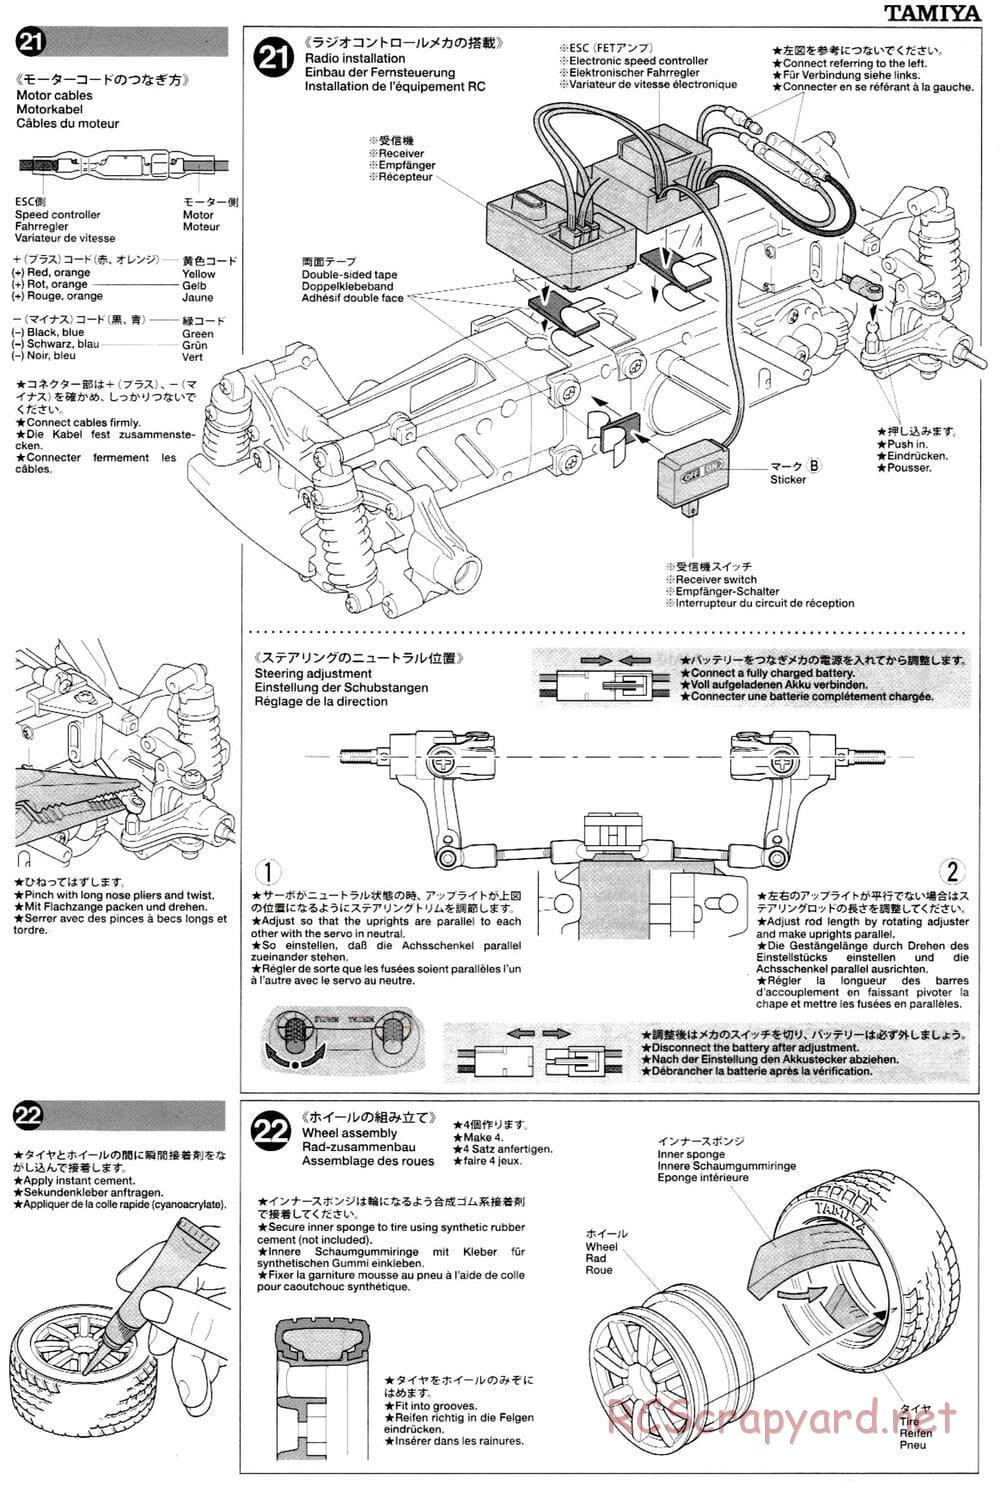 Tamiya - M-03L Chassis - Manual - Page 11